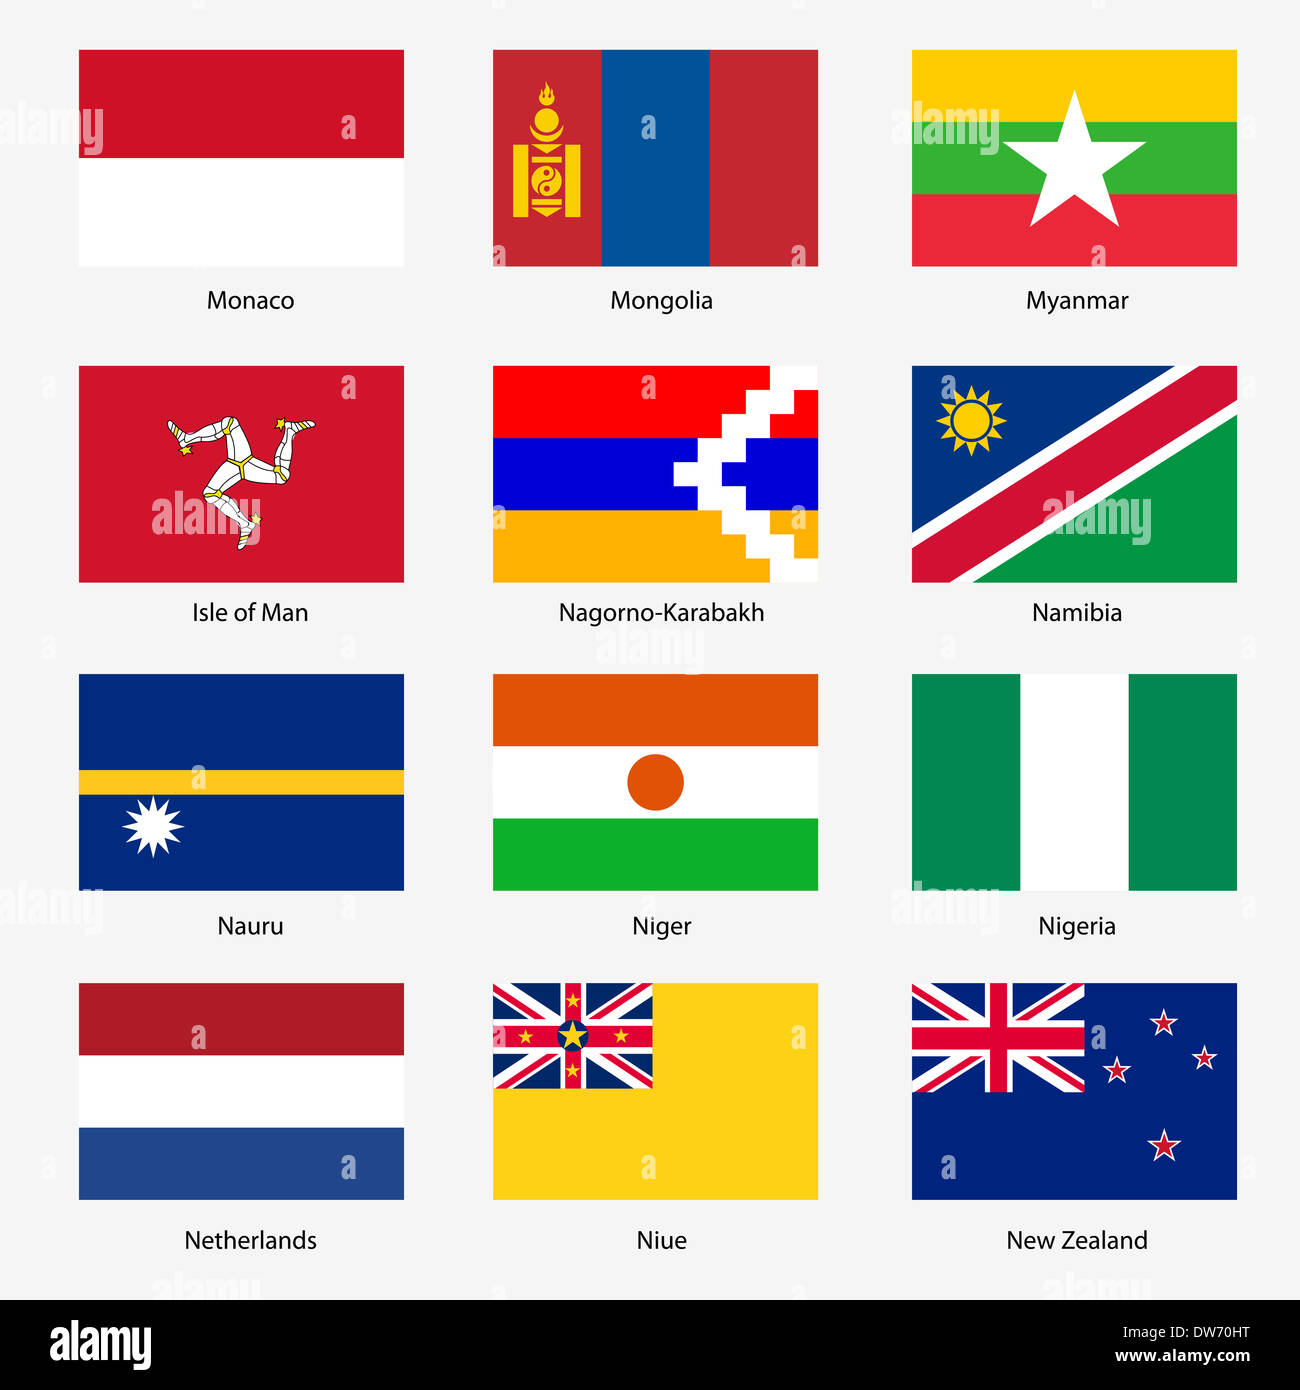 Флаг страны квадратной формы. Похожит флаги государств.